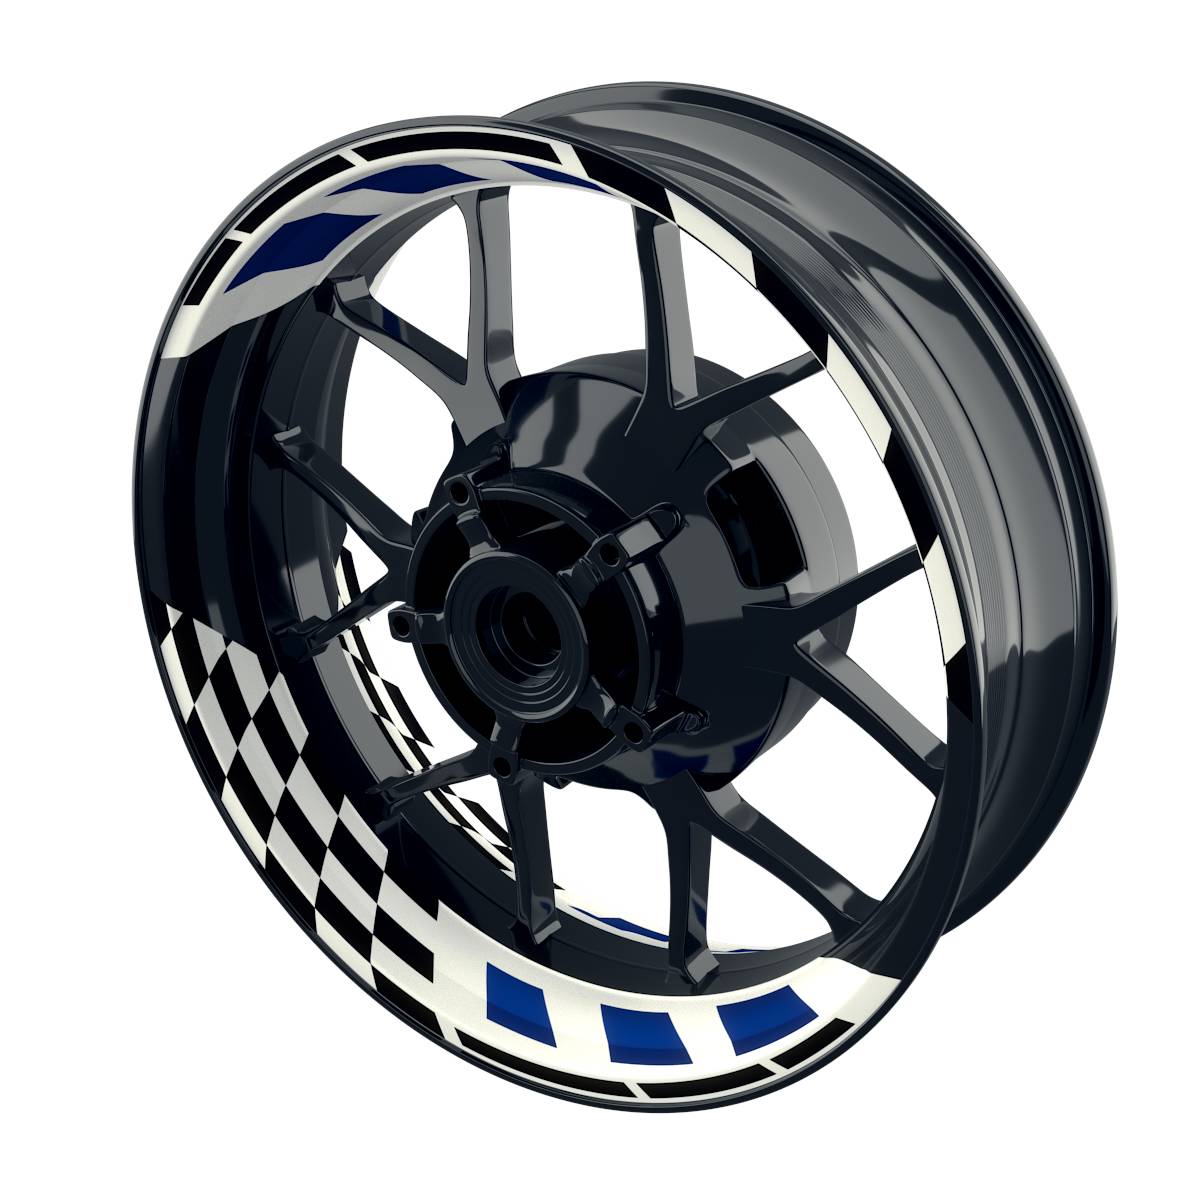 RACE white Rim Decals Wheelsticker Premium splitted